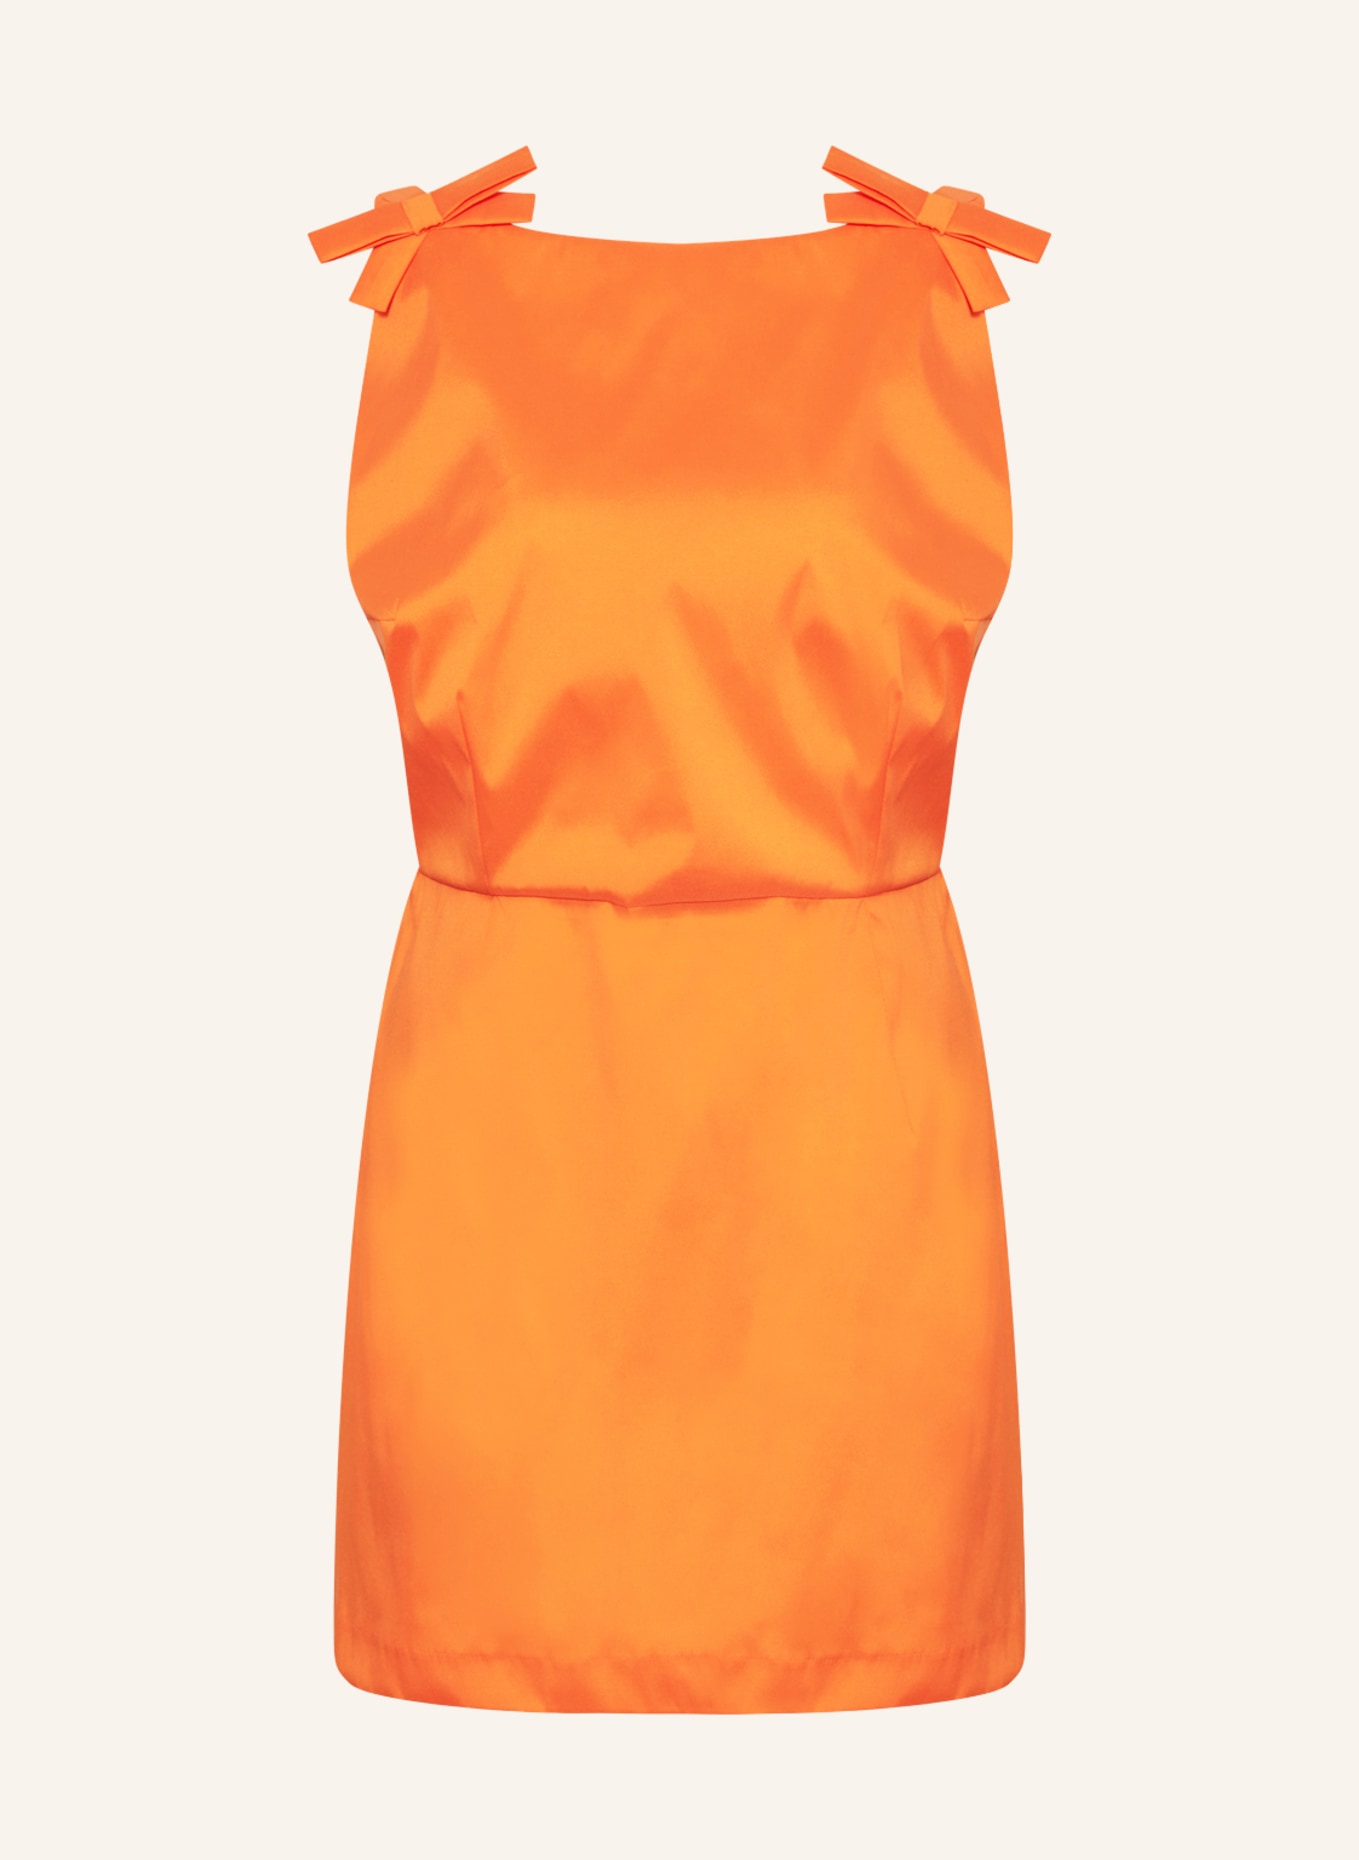 BERNADETTE Kleid KIM mit Cut-out, Farbe: ORANGE (Bild 1)